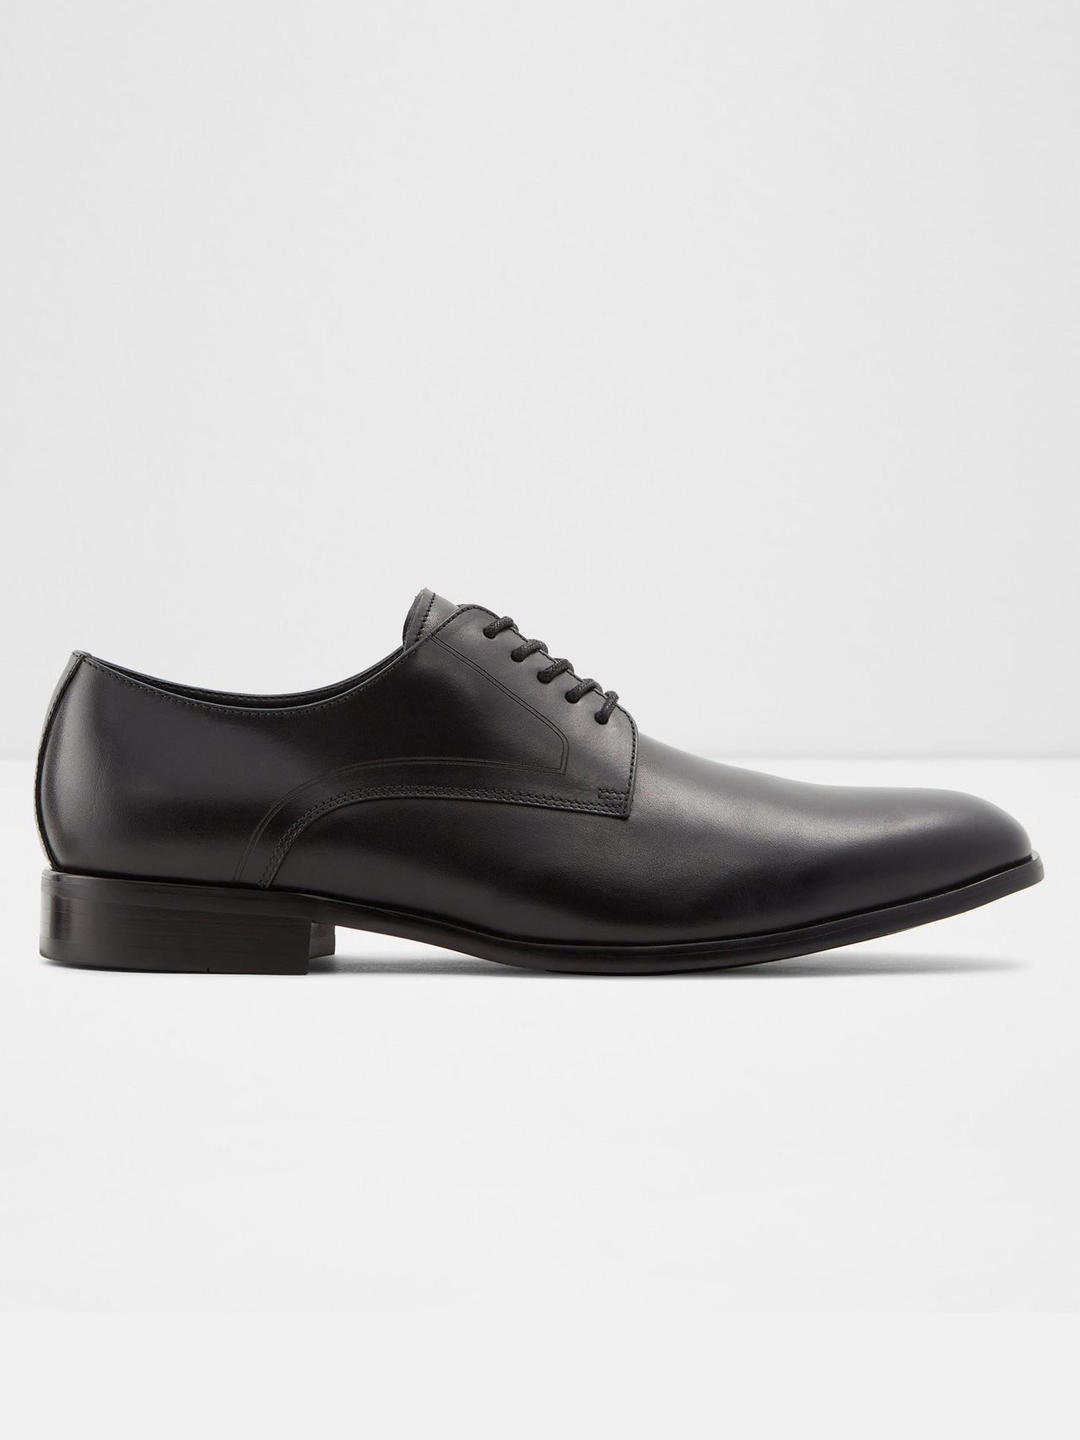 aldo shoes formal